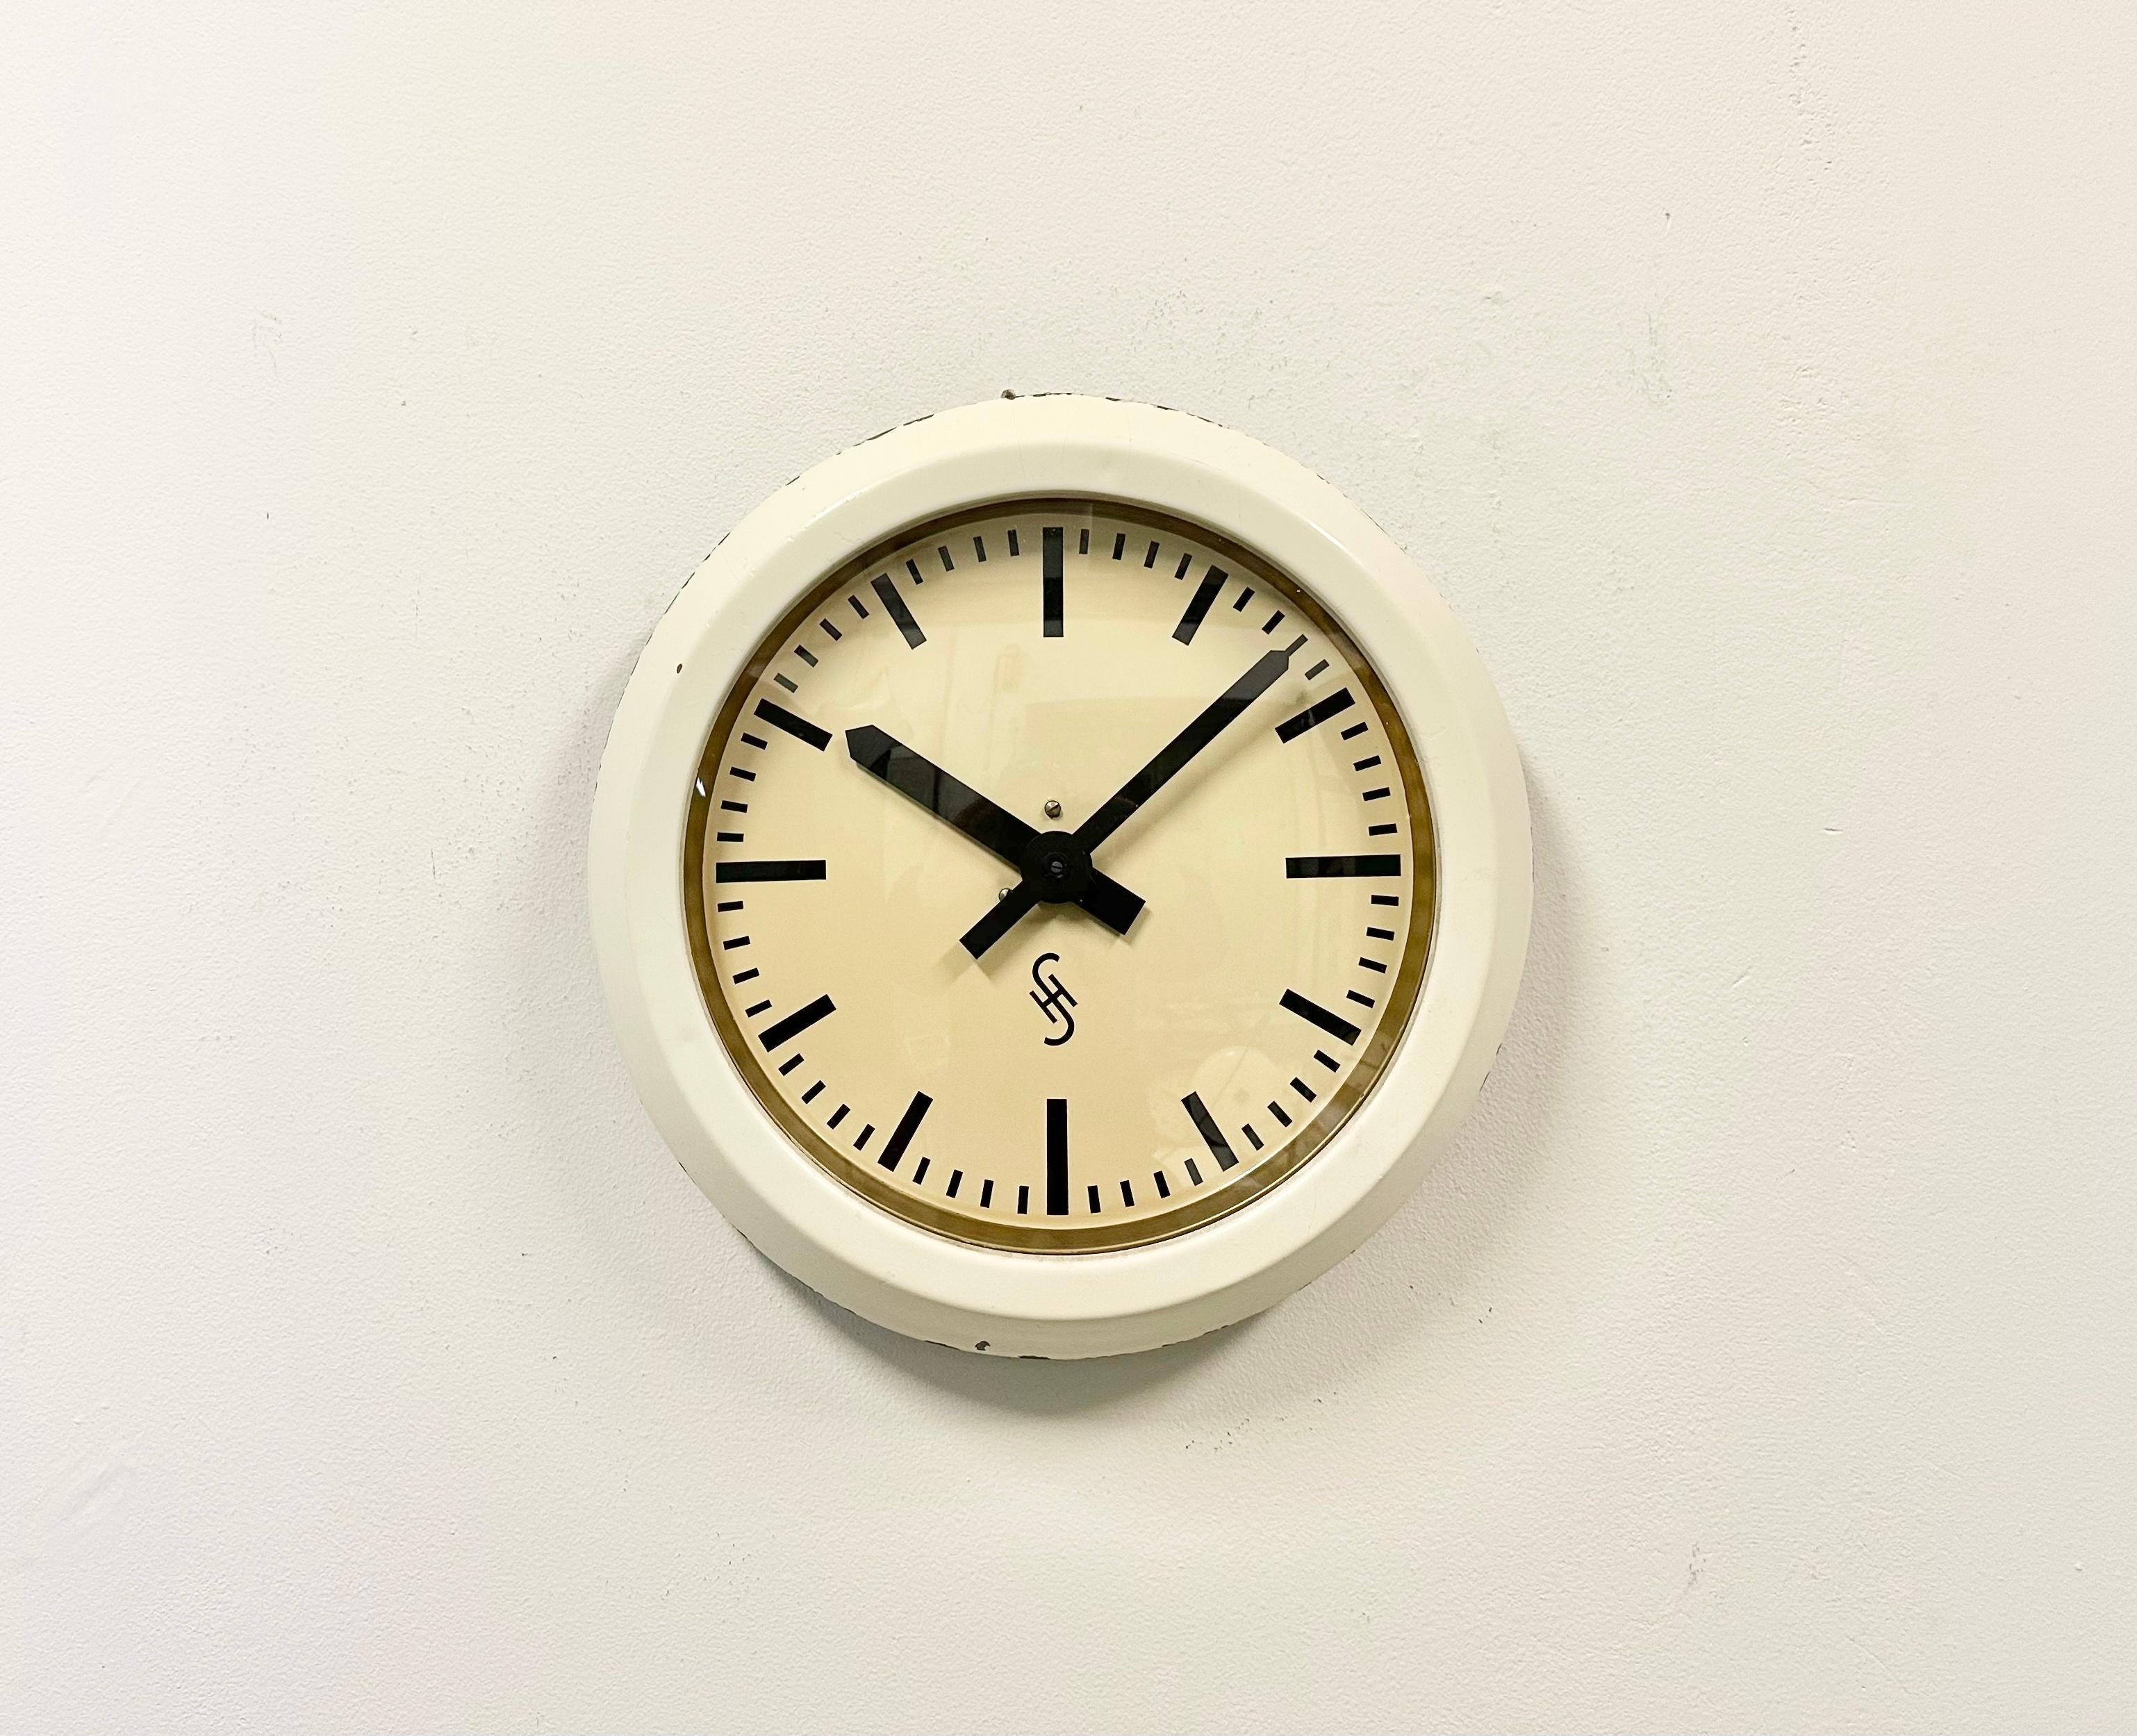 Diese Wanduhr wurde in den 1950er Jahren von Siemens und Halske in Deutschland hergestellt. Sie hat einen beigen Metallrahmen, ein Aluminiumzifferblatt und eine Abdeckung aus Klarglas. Das Stück wurde in ein batteriebetriebenes Uhrwerk umgewandelt